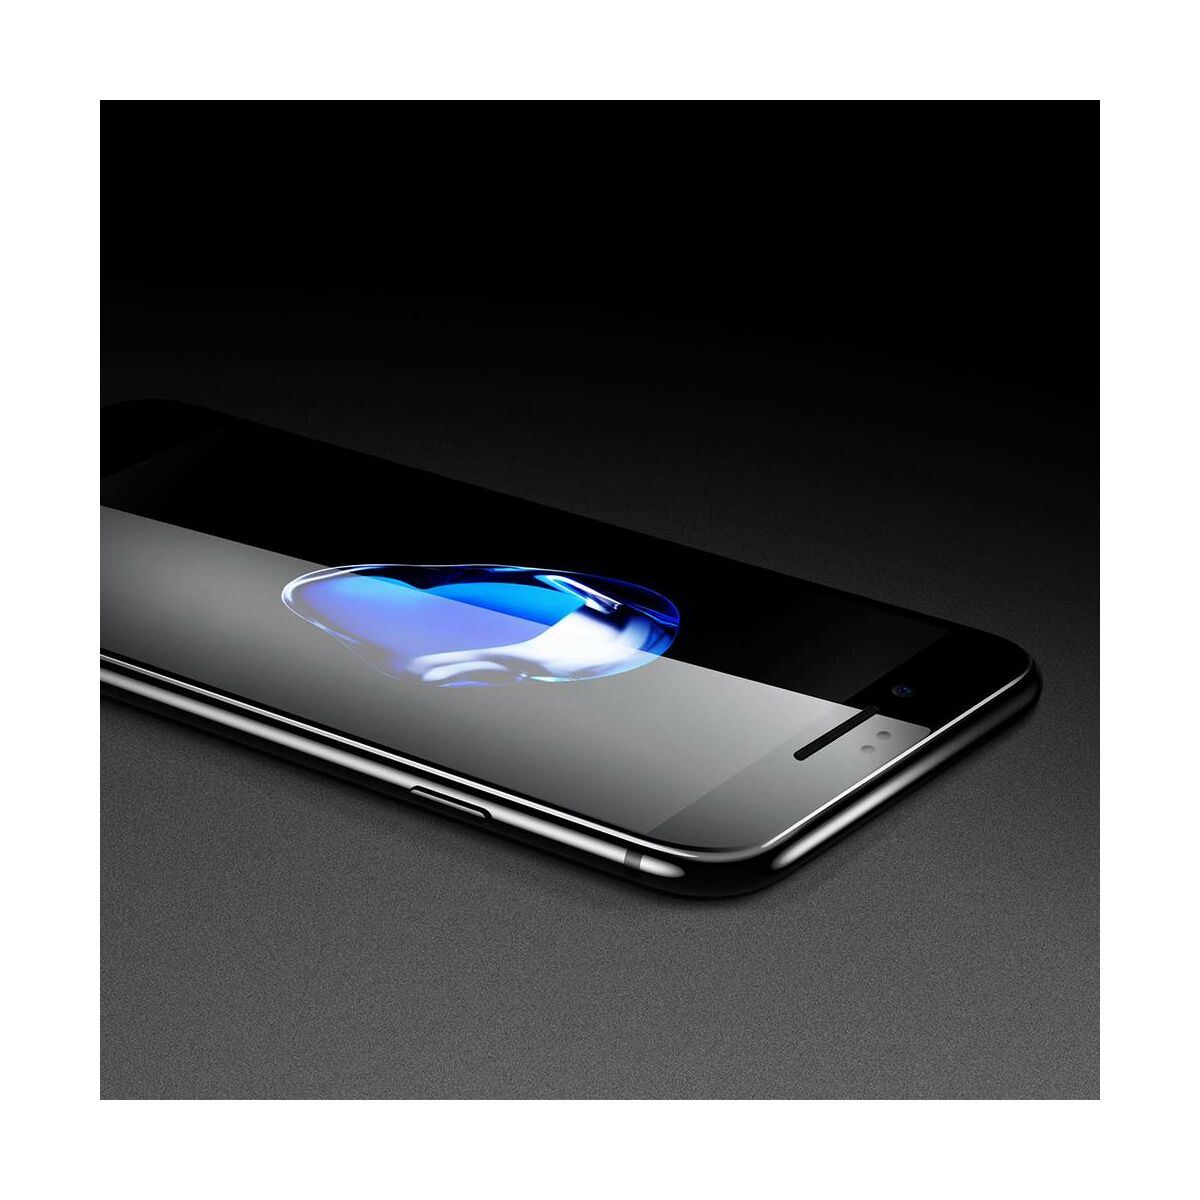 Baseus iPhone 6/6s Plus 0.3 mm, teljes felületre edzett üveg kijelzővédő fólia, fekete (SGAPIPH6SP-B3D01)